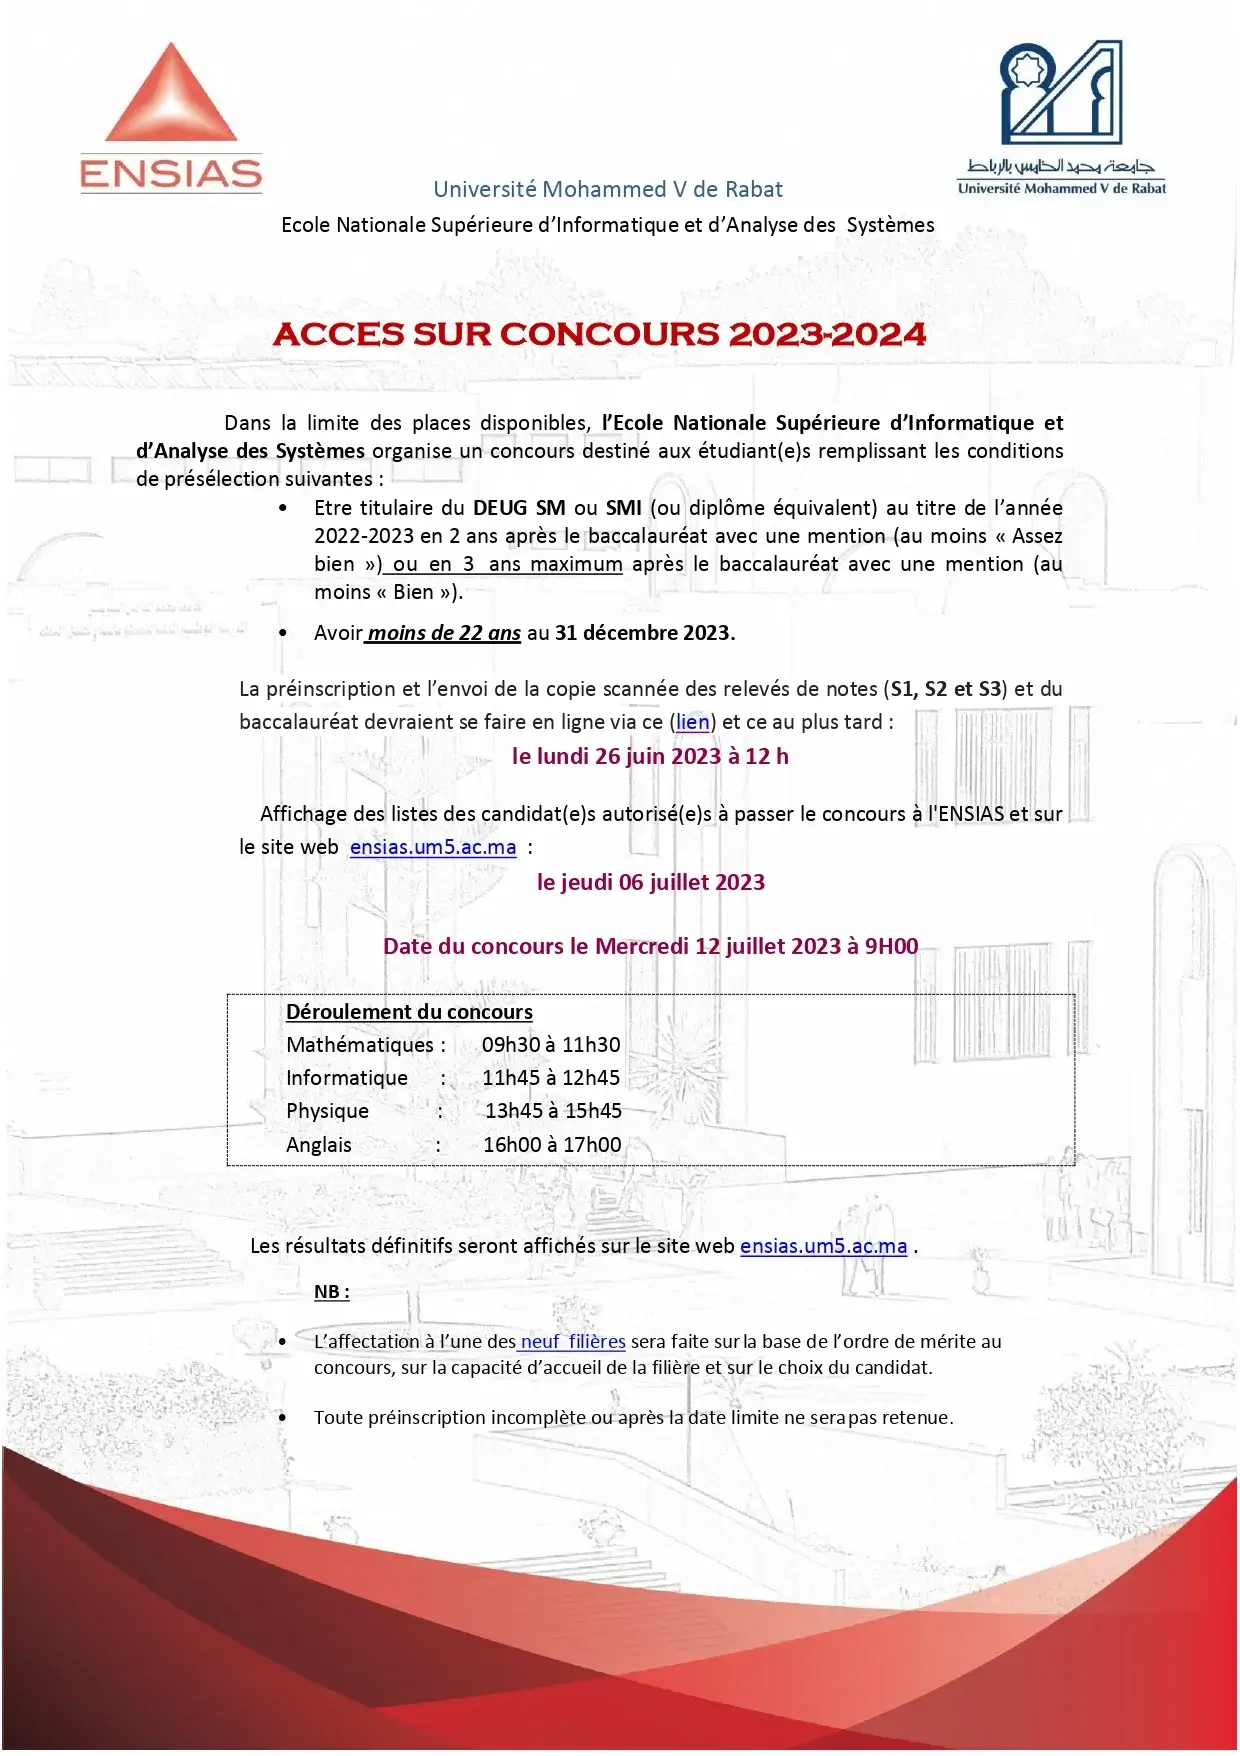 Inscription Concours ENSIAS Rabat 2023